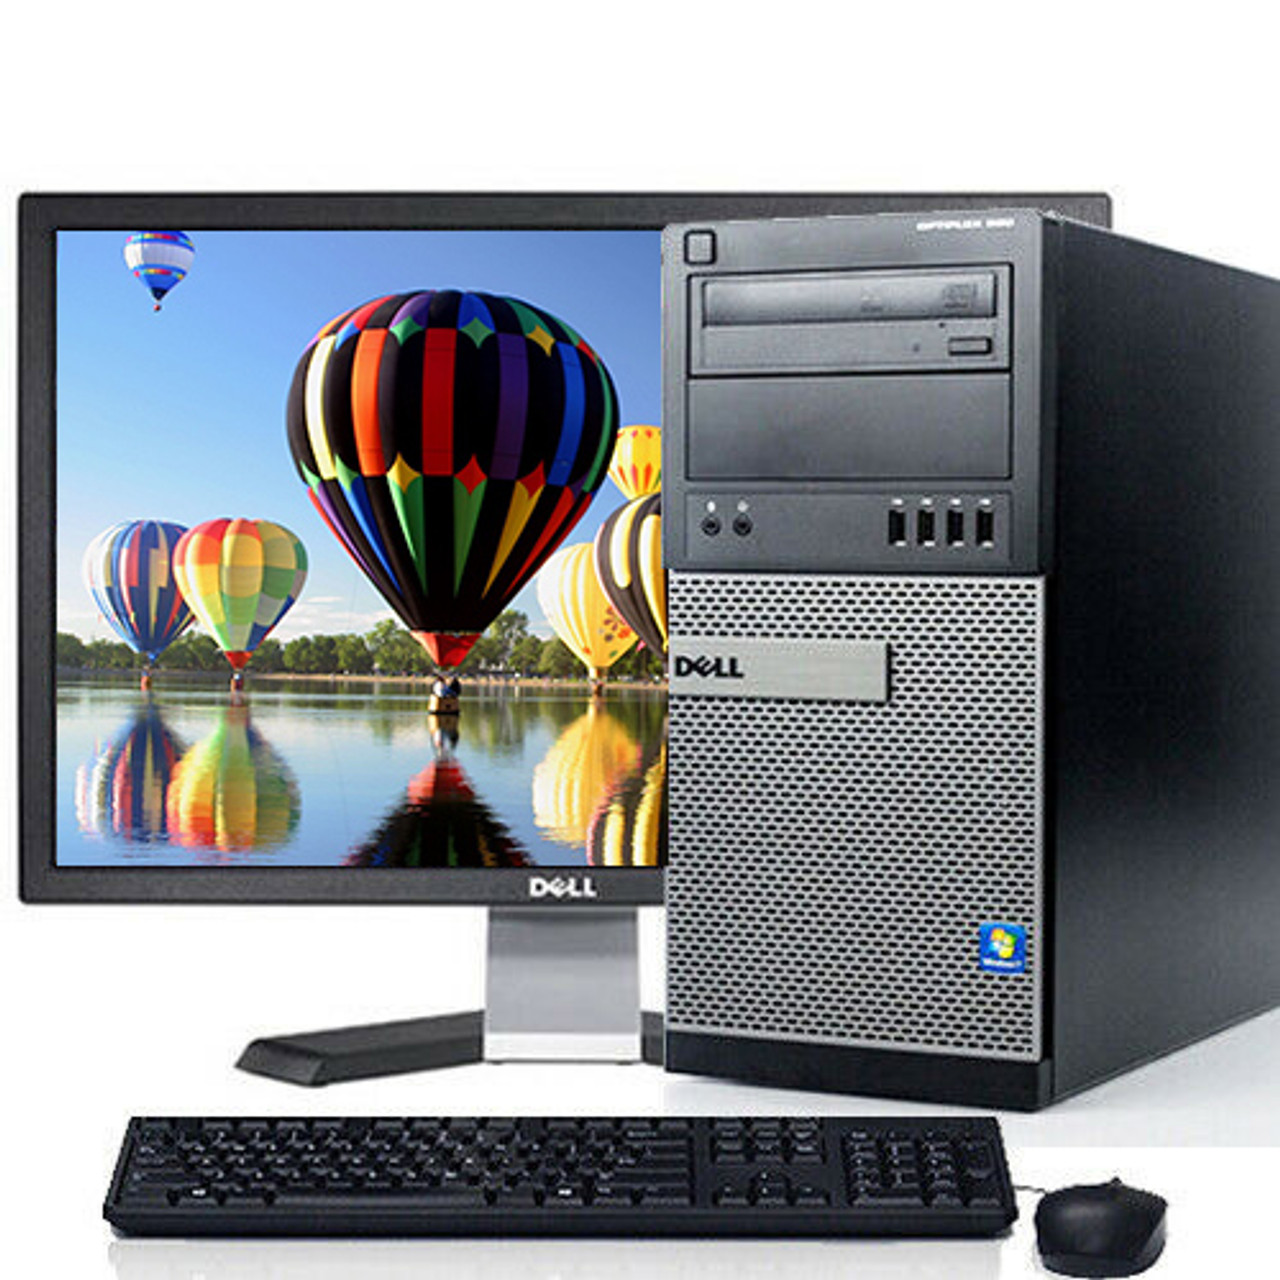 Dell Optiplex 790 Desktop Computer Tower Core I5 8gb 500gb Windows 10 Pro W 19 Lcd And Wifi